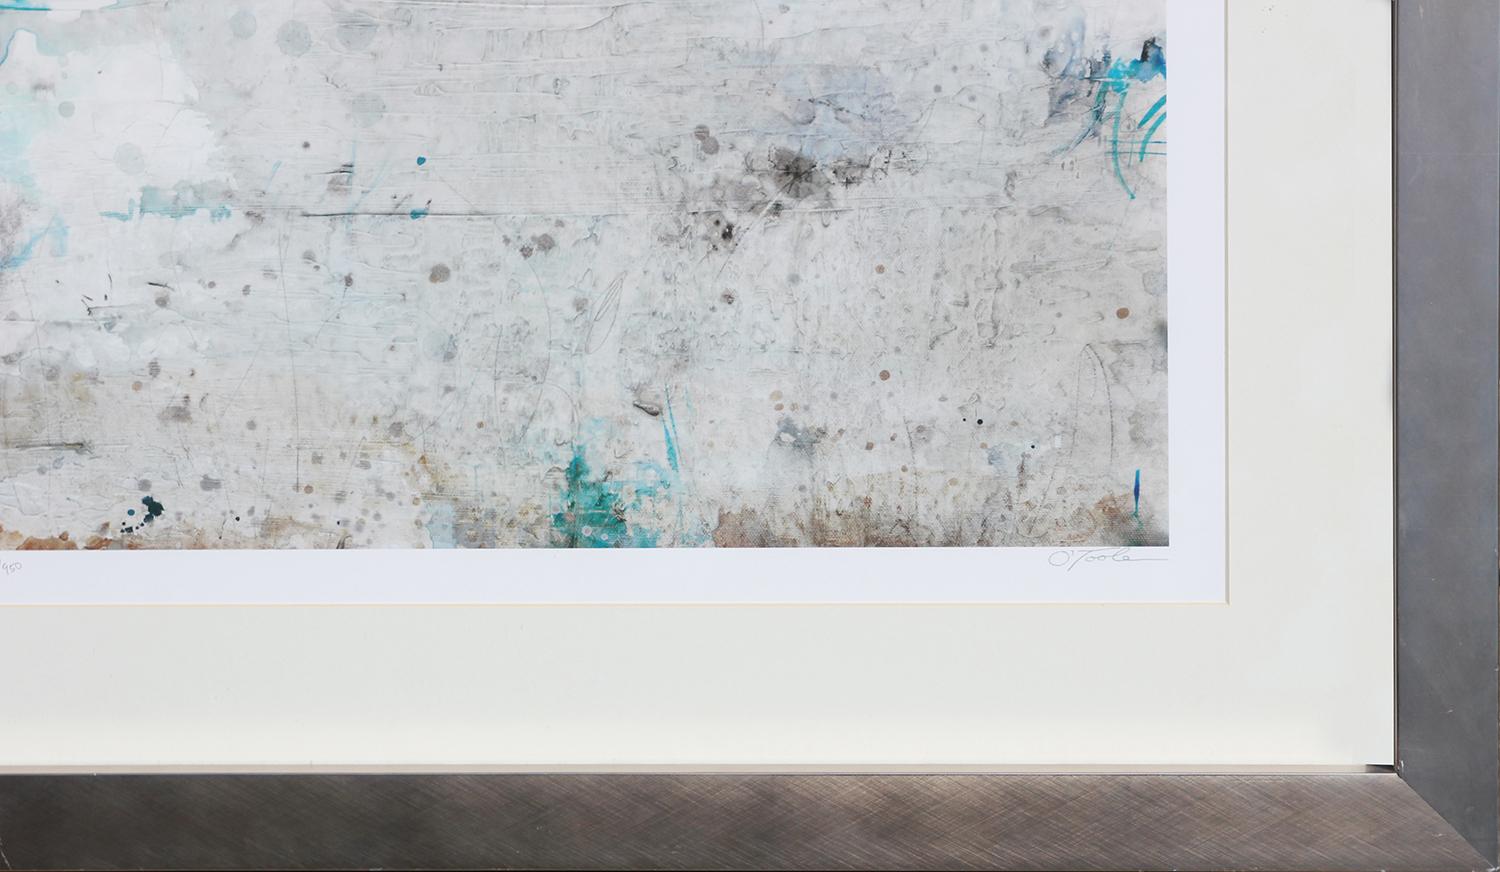 Abstrakte Landschaft in blauen und grauen Farbtönen als Digitaldruck des Künstlers Timothy O'Toole aus Ohio. Dieser skurrile Druck zeigt ein spiegelndes Gewässer entlang eines Horizonts. Dieses Stück hat die Auflage 371/950. Gerahmt und mattiert in